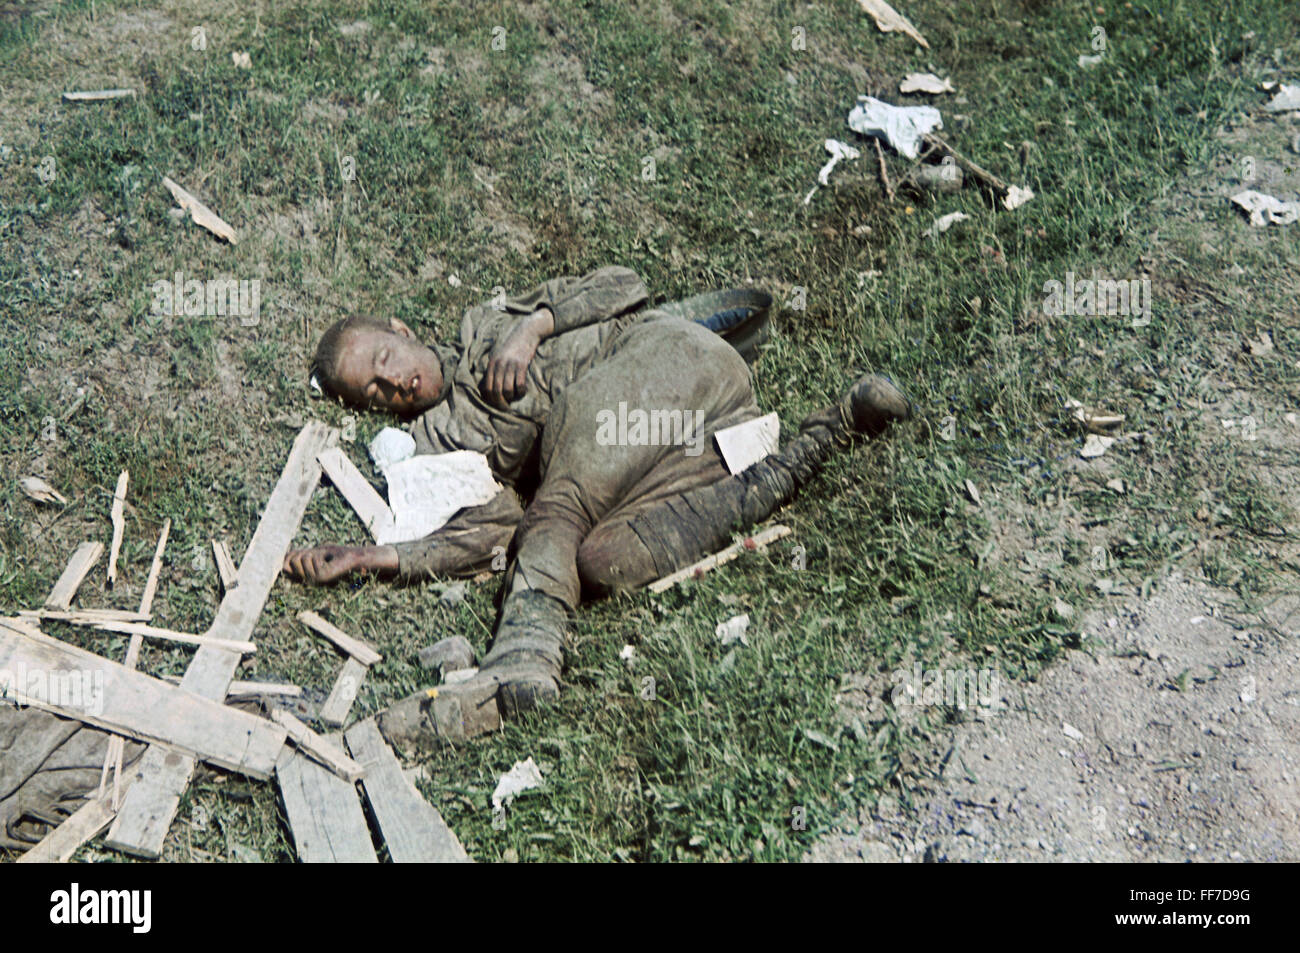 Ereignisse, 2. Weltkrieg, Russland 1941, toter sowjetischer Soldat am Straßenrand, Weißrussland, Juli 1941, Zusatzrechte-Clearences-nicht vorhanden Stockfoto